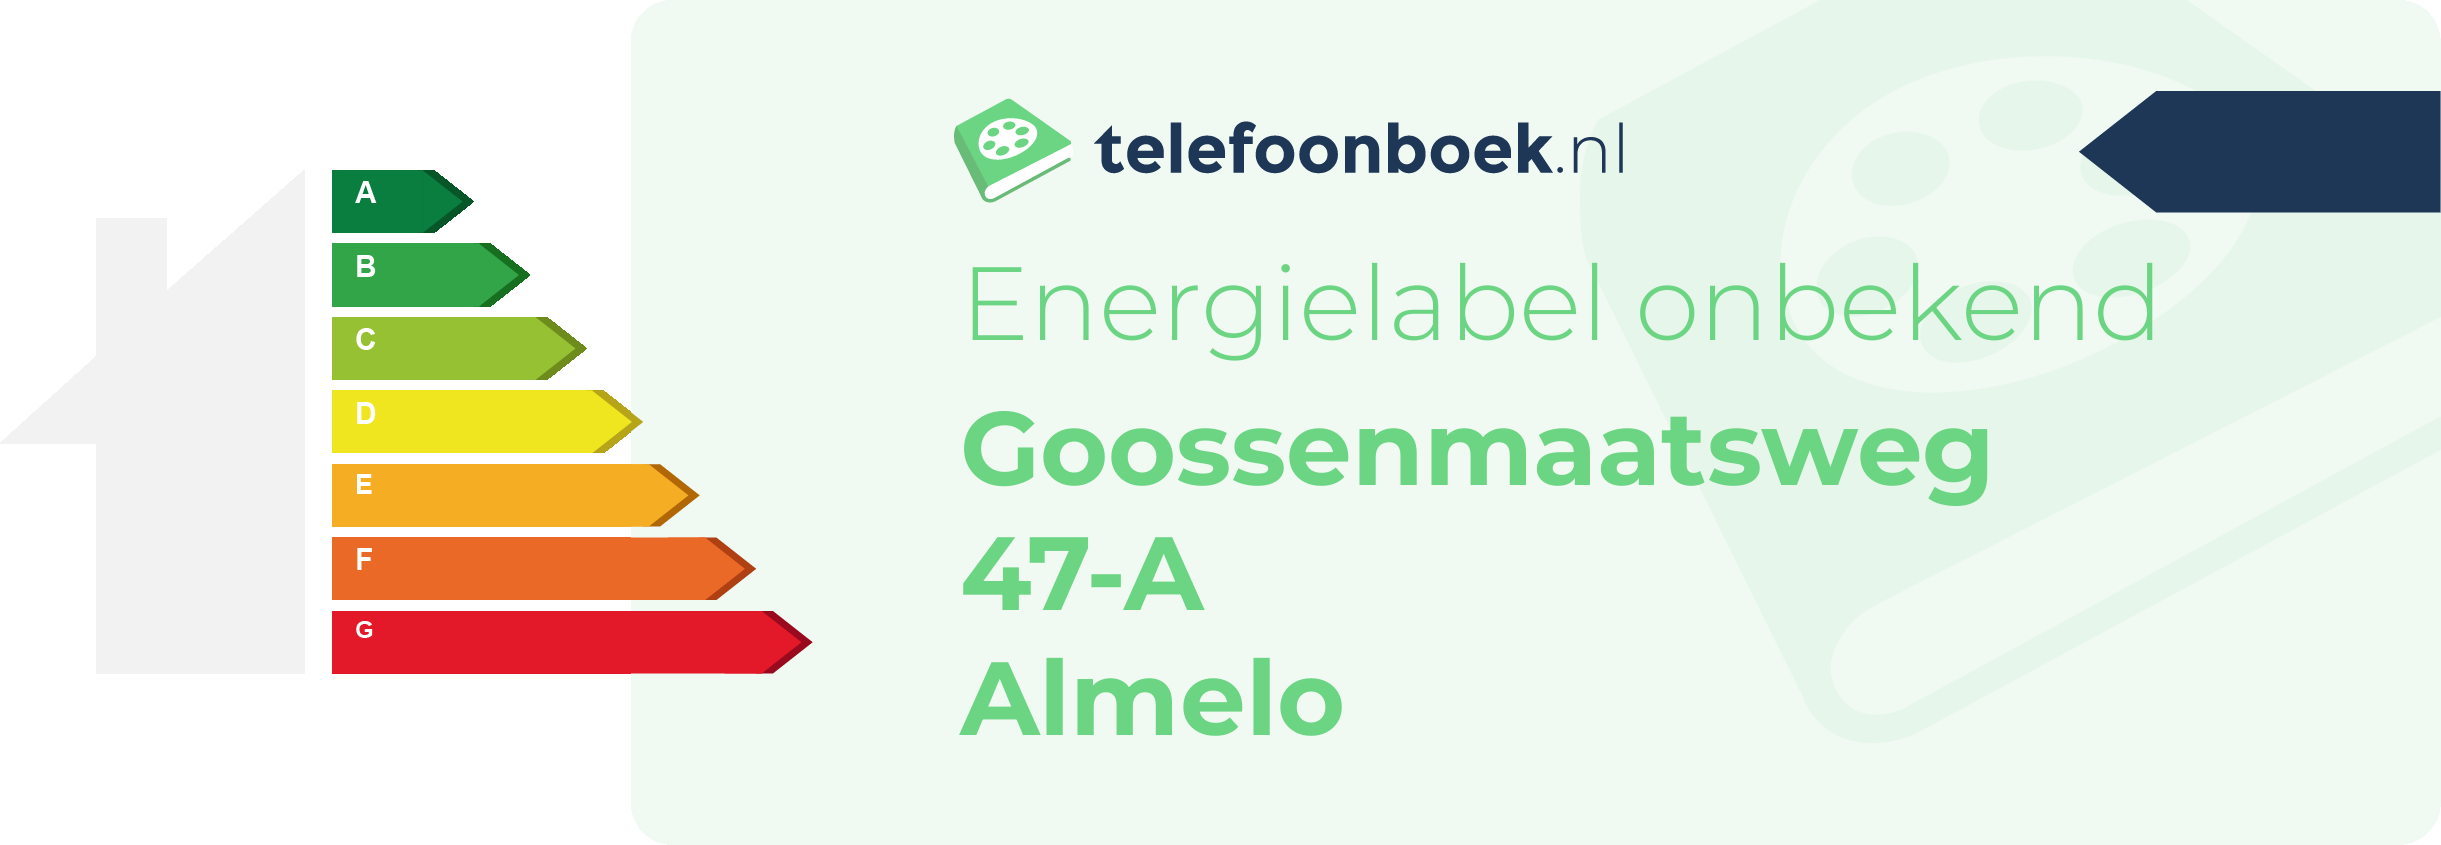 Energielabel Goossenmaatsweg 47-A Almelo